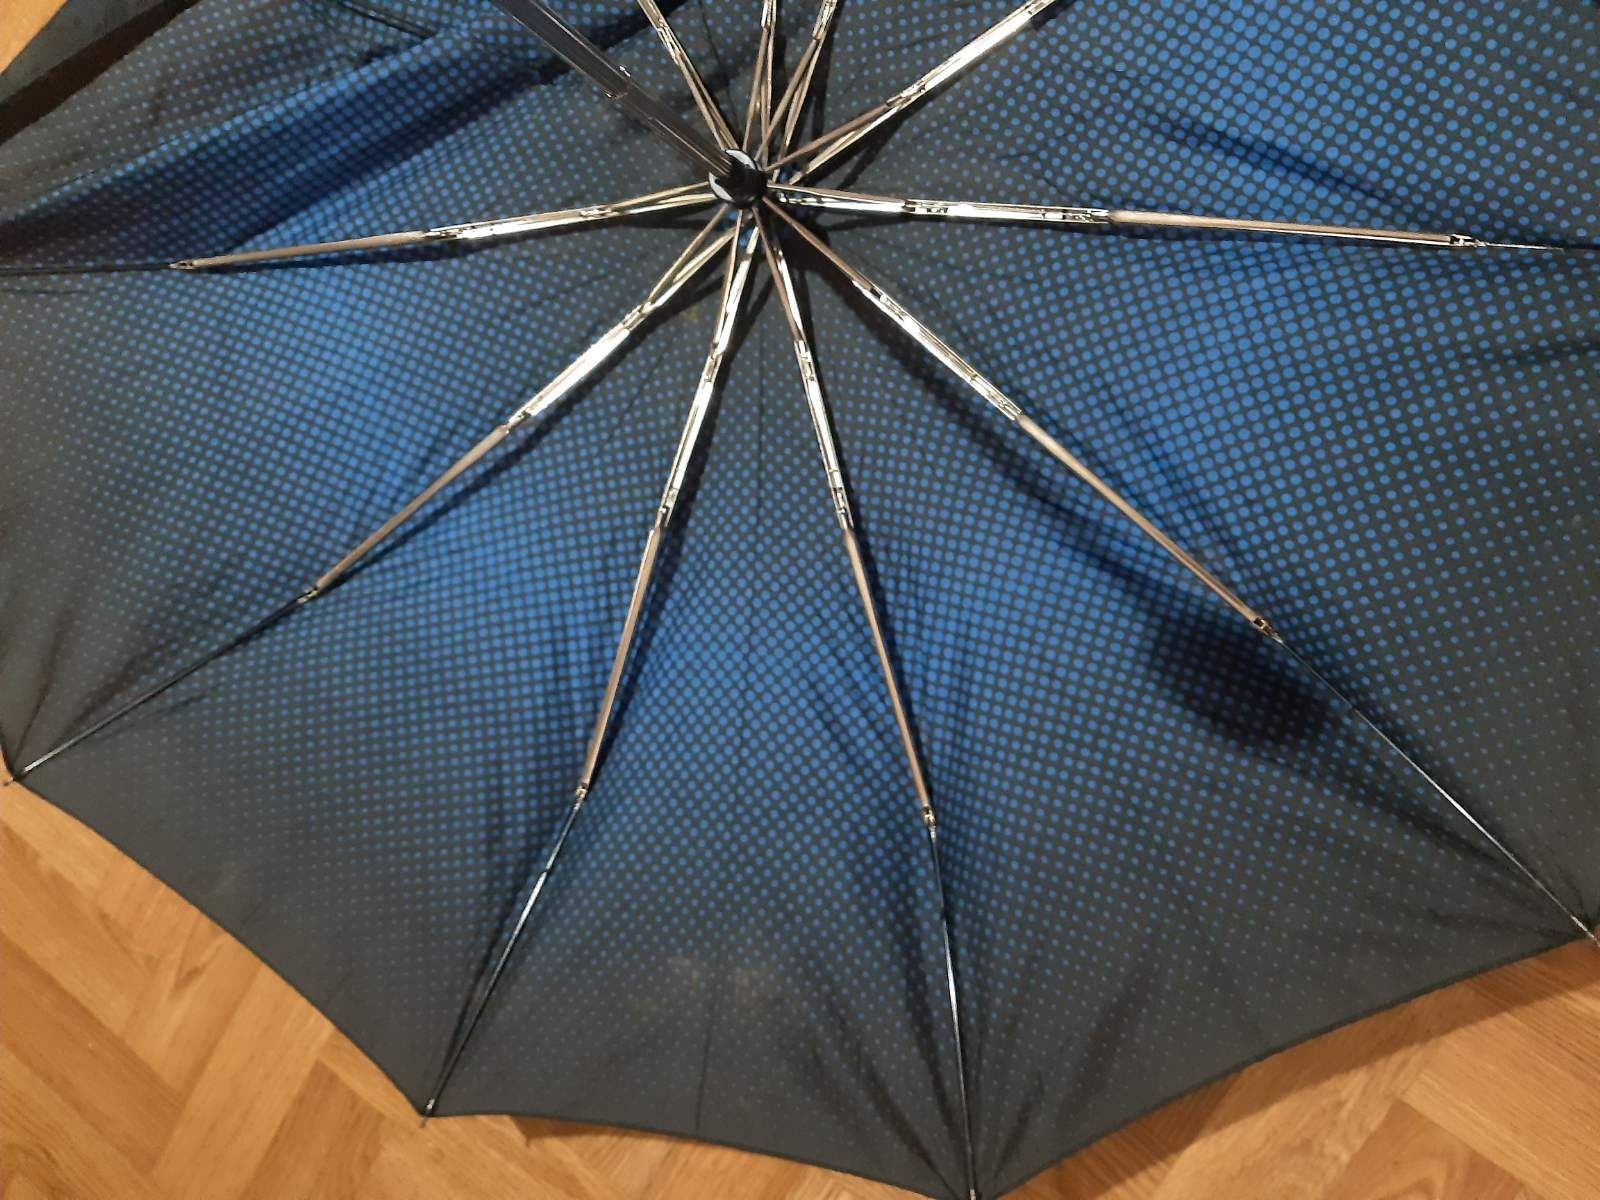 Зонтик под ремонт.